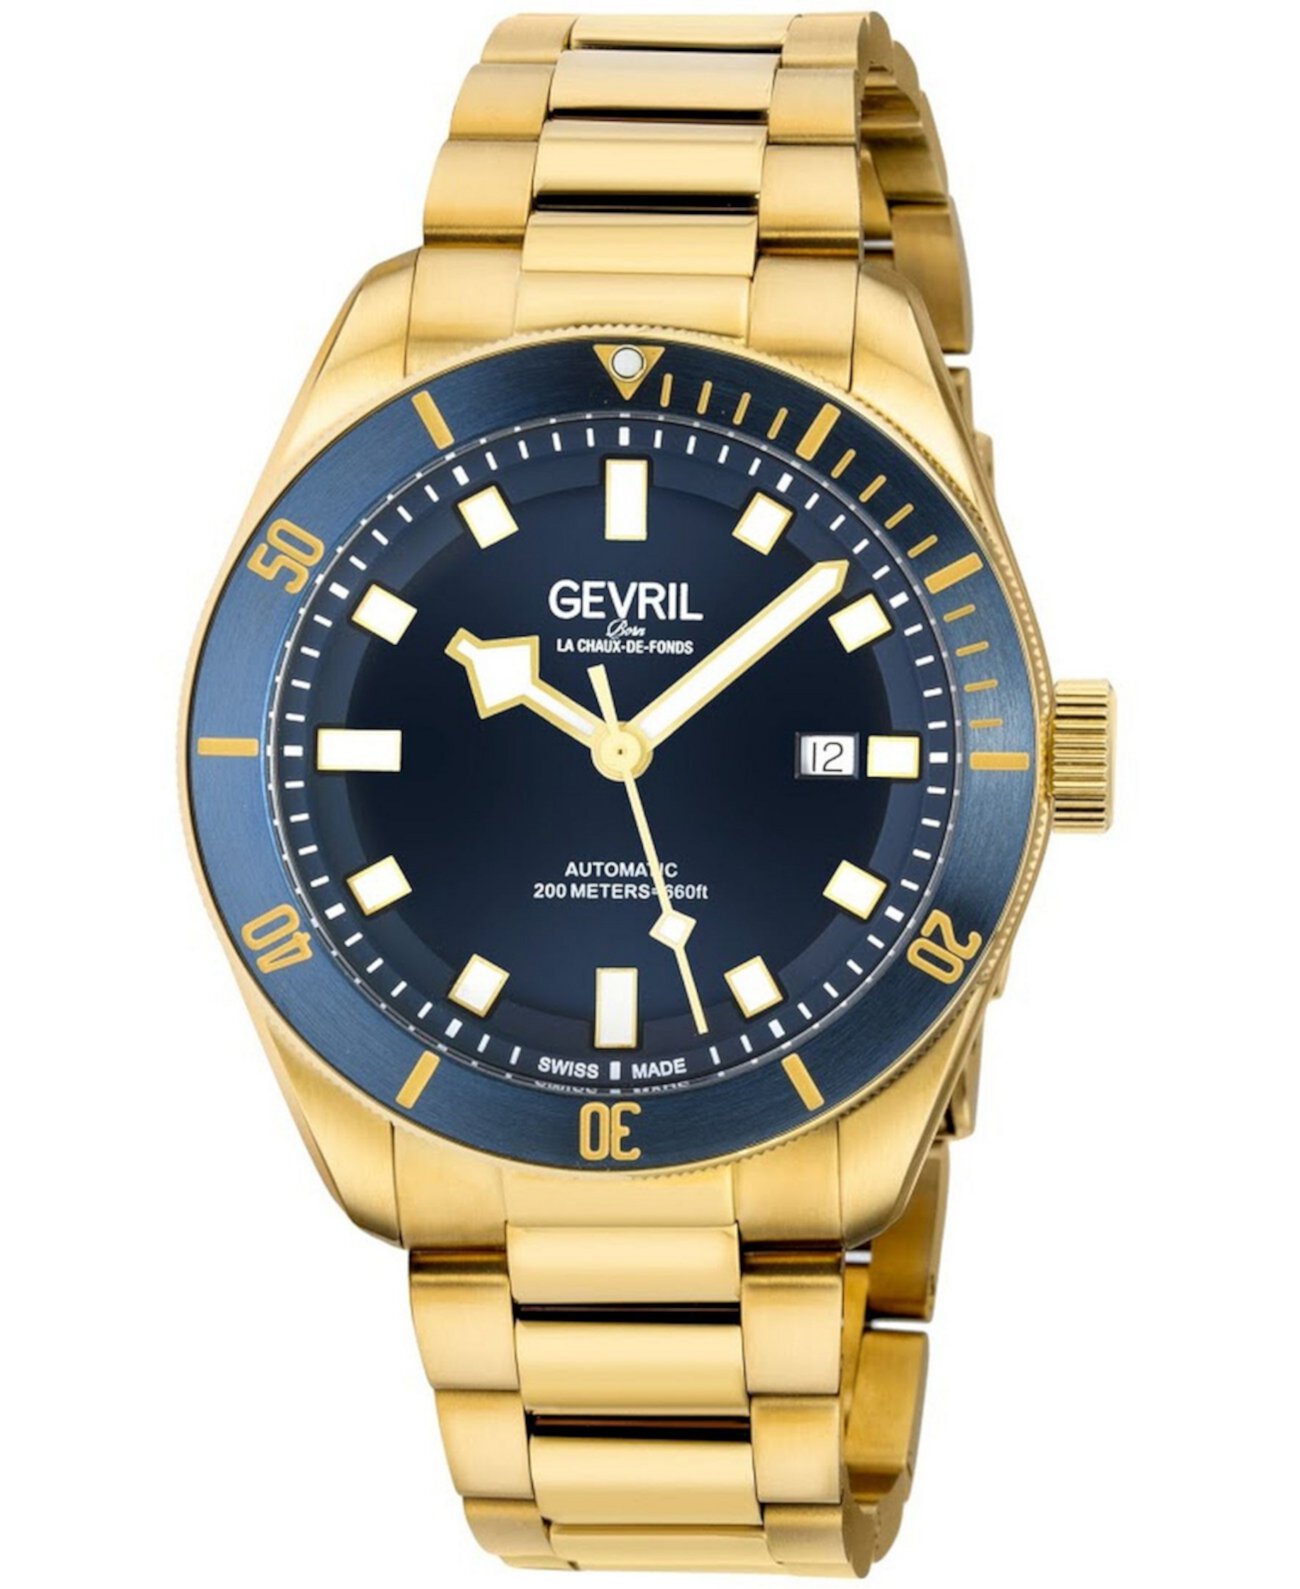 Мужские часы Yorkville Swiss с автоматическим ионным покрытием из нержавеющей стали с золотым браслетом, 43 мм Gevril